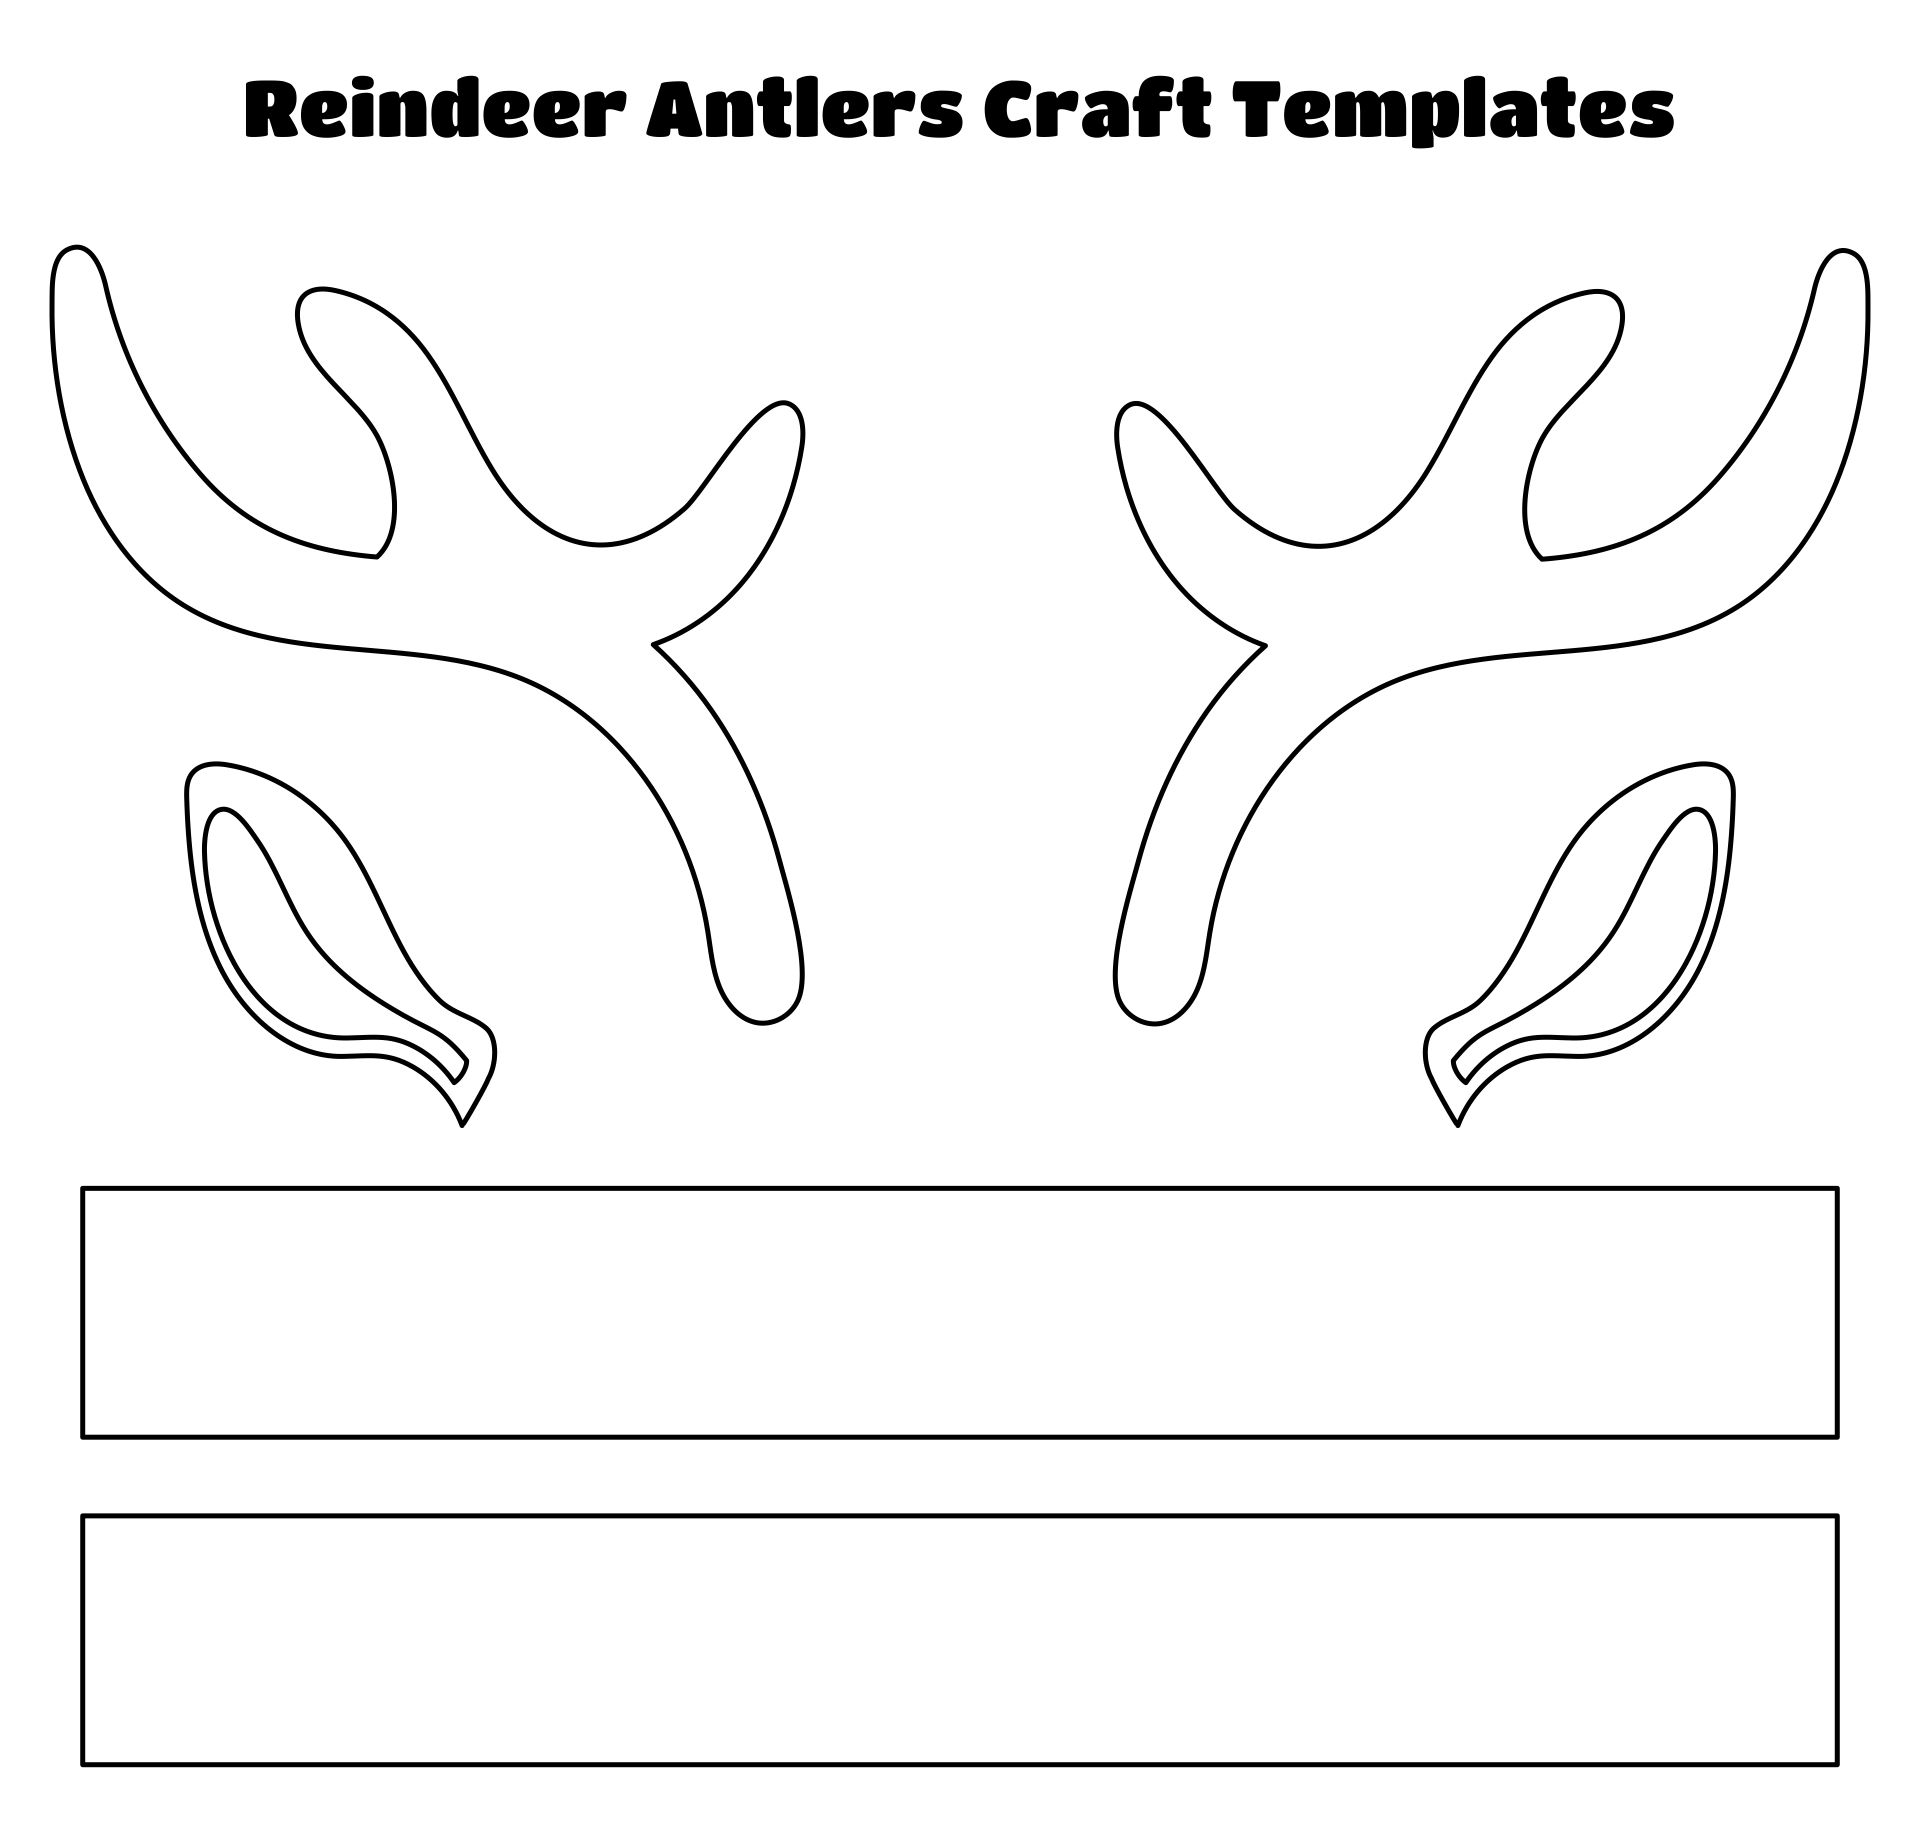 Printable Reindeer Antlers Craft Templates